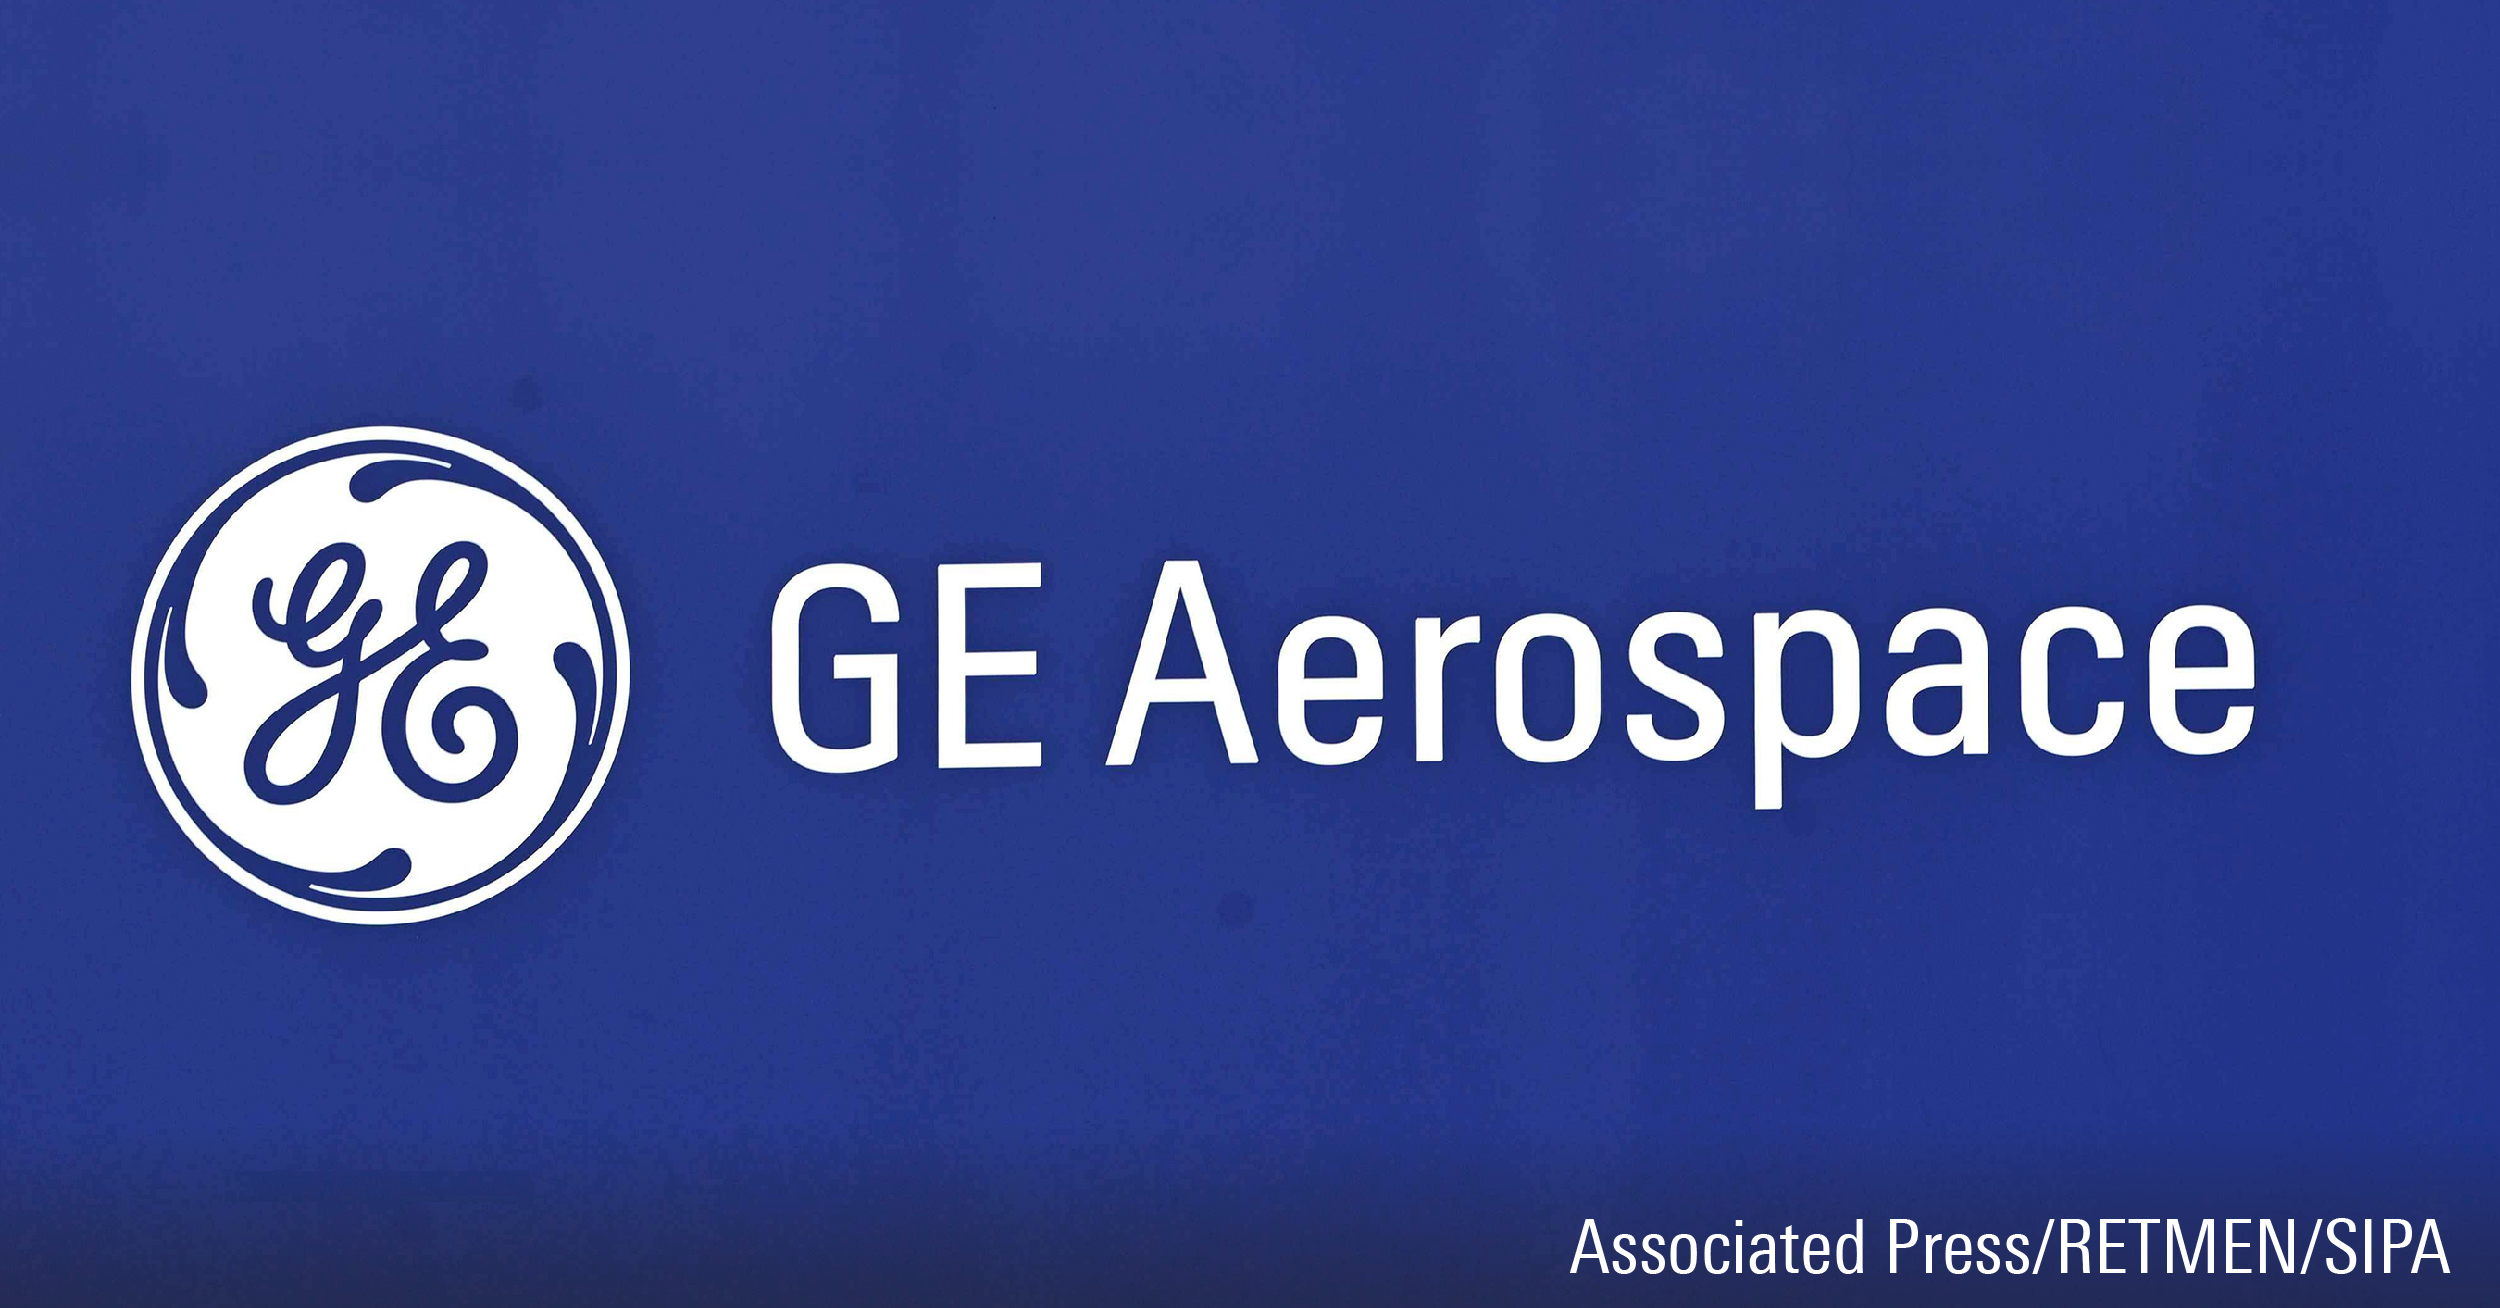 GE Aerospace logo on blue background